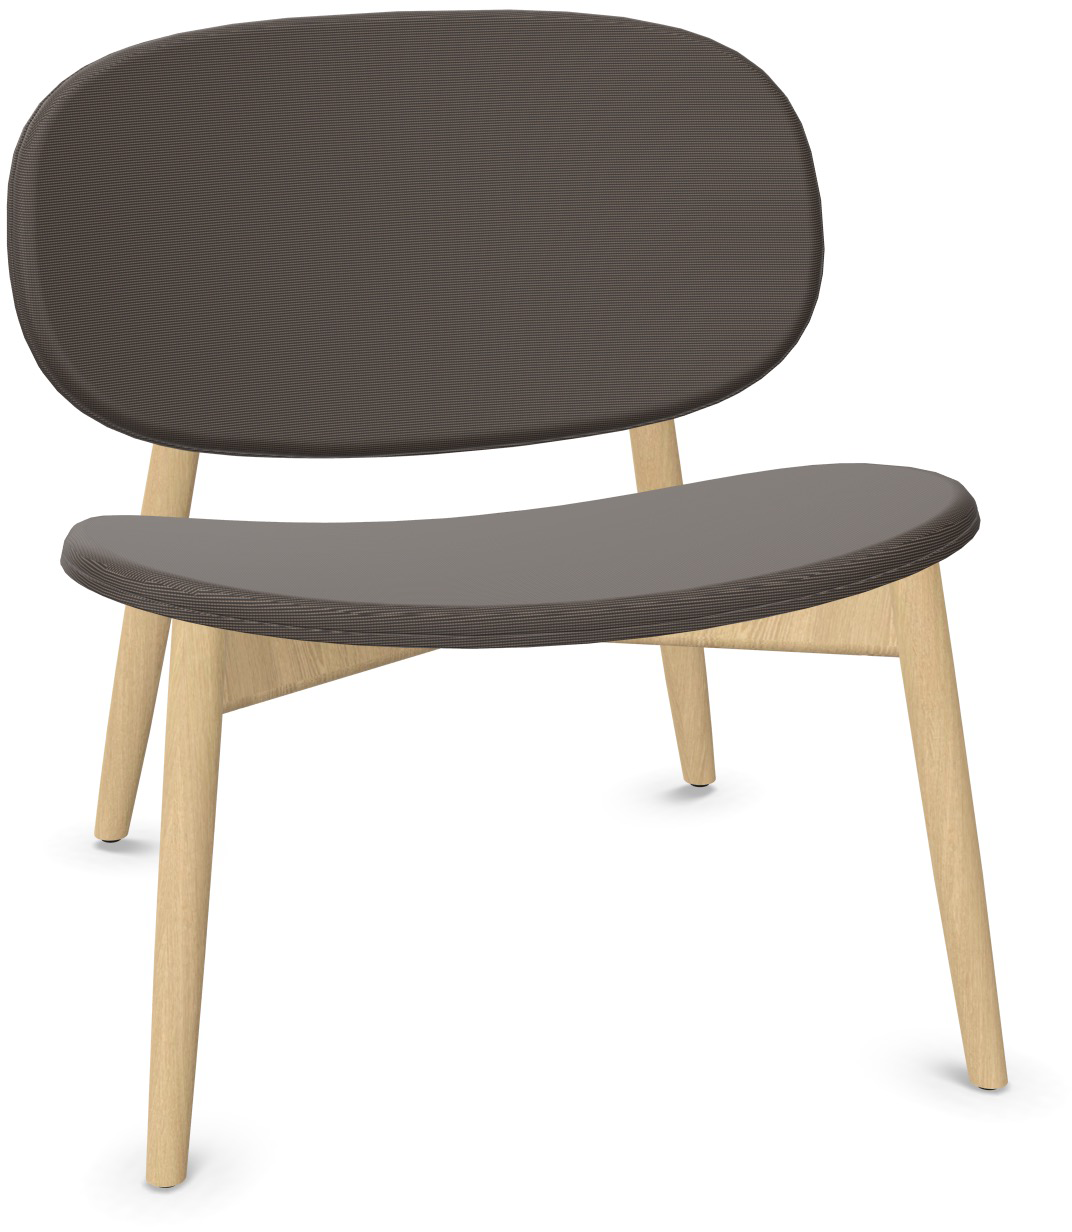 HARMO Relaxsessel in Graubraun präsentiert im Onlineshop von KAQTU Design AG. Sessel ist von Infiniti Design